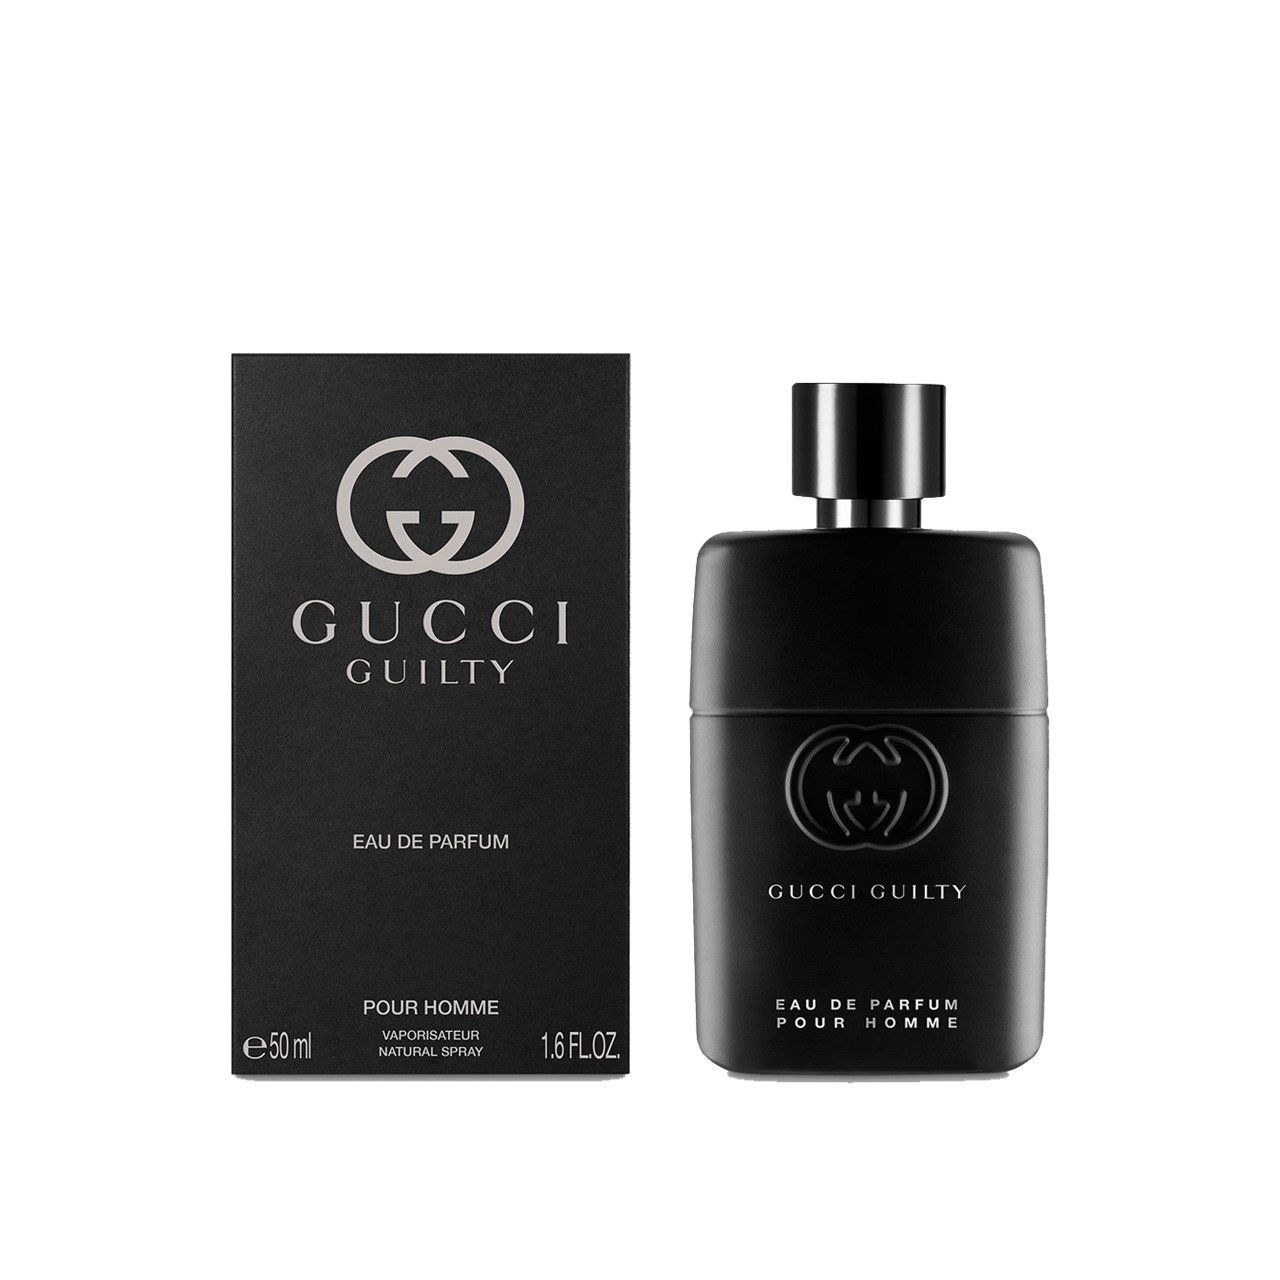 Gucci Guilty Eau de Parfum For Men 50ml